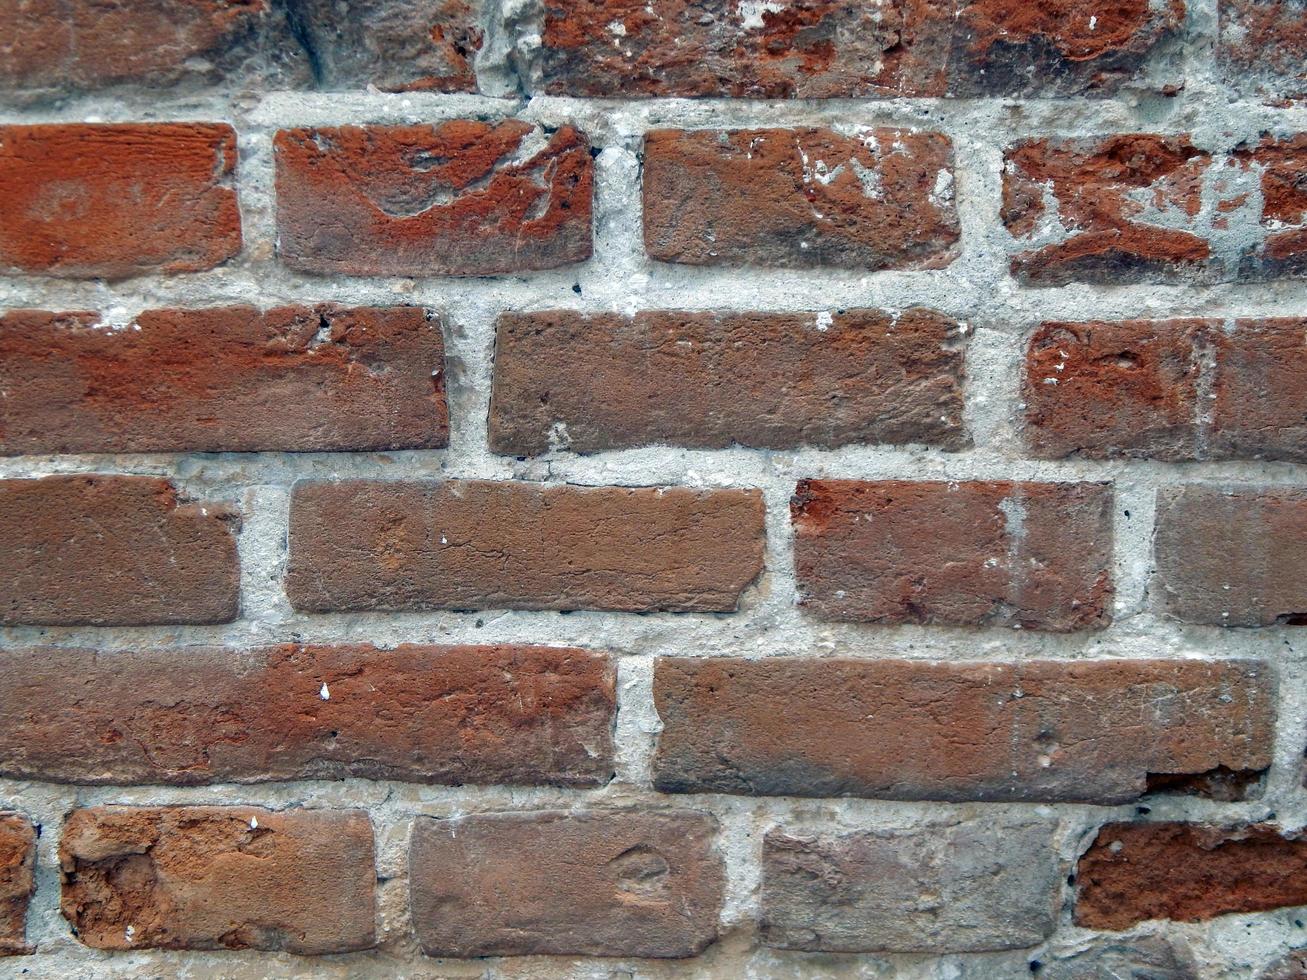 texture des matériaux en pierre naturelle et des murs de maçonnerie en brique photo